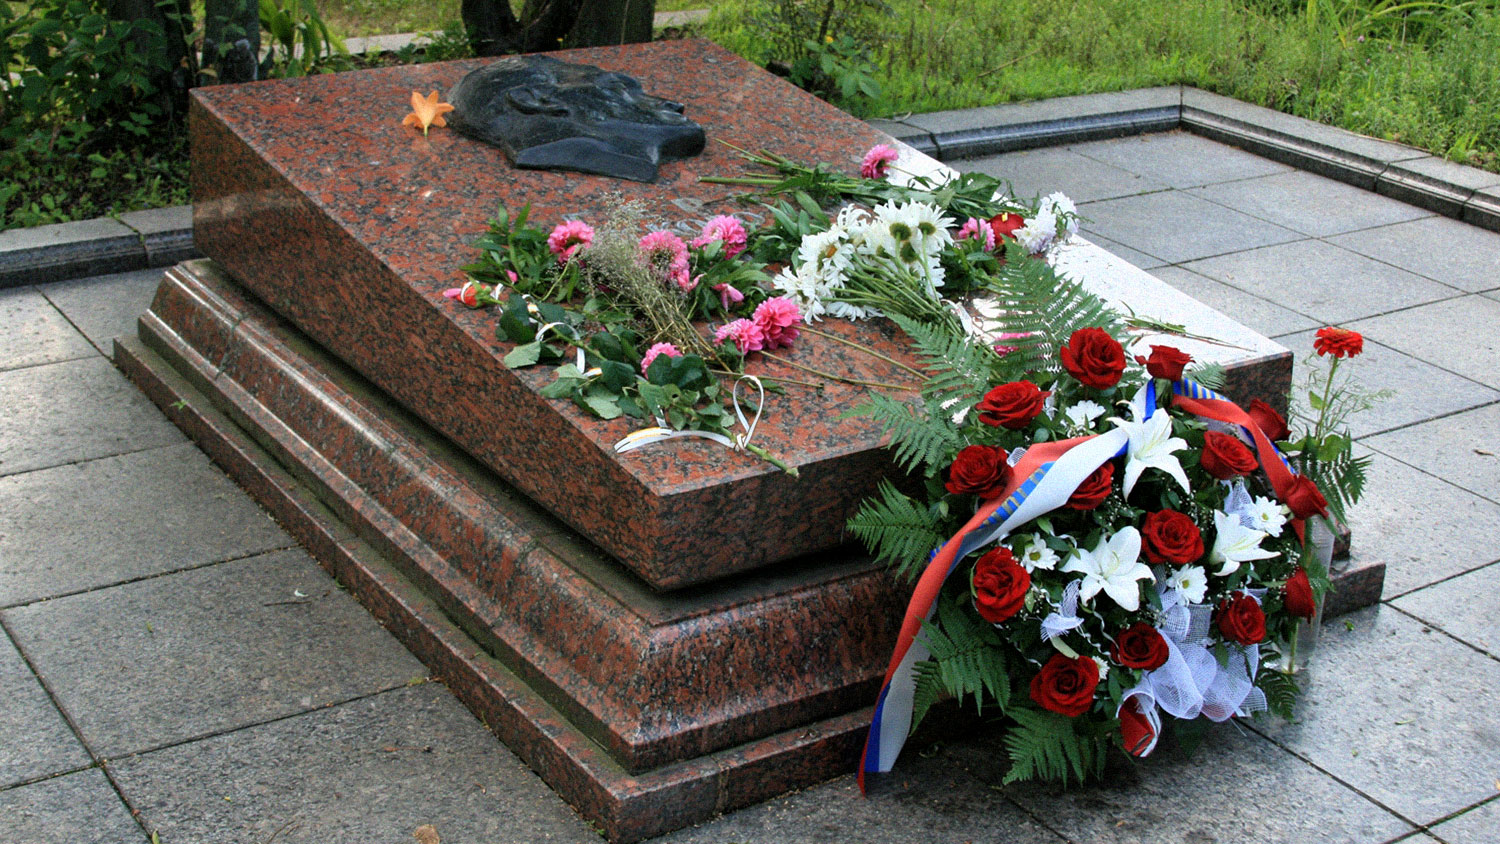 Львов отказался отдавать родственникам останки советского разведчика Кузнецова